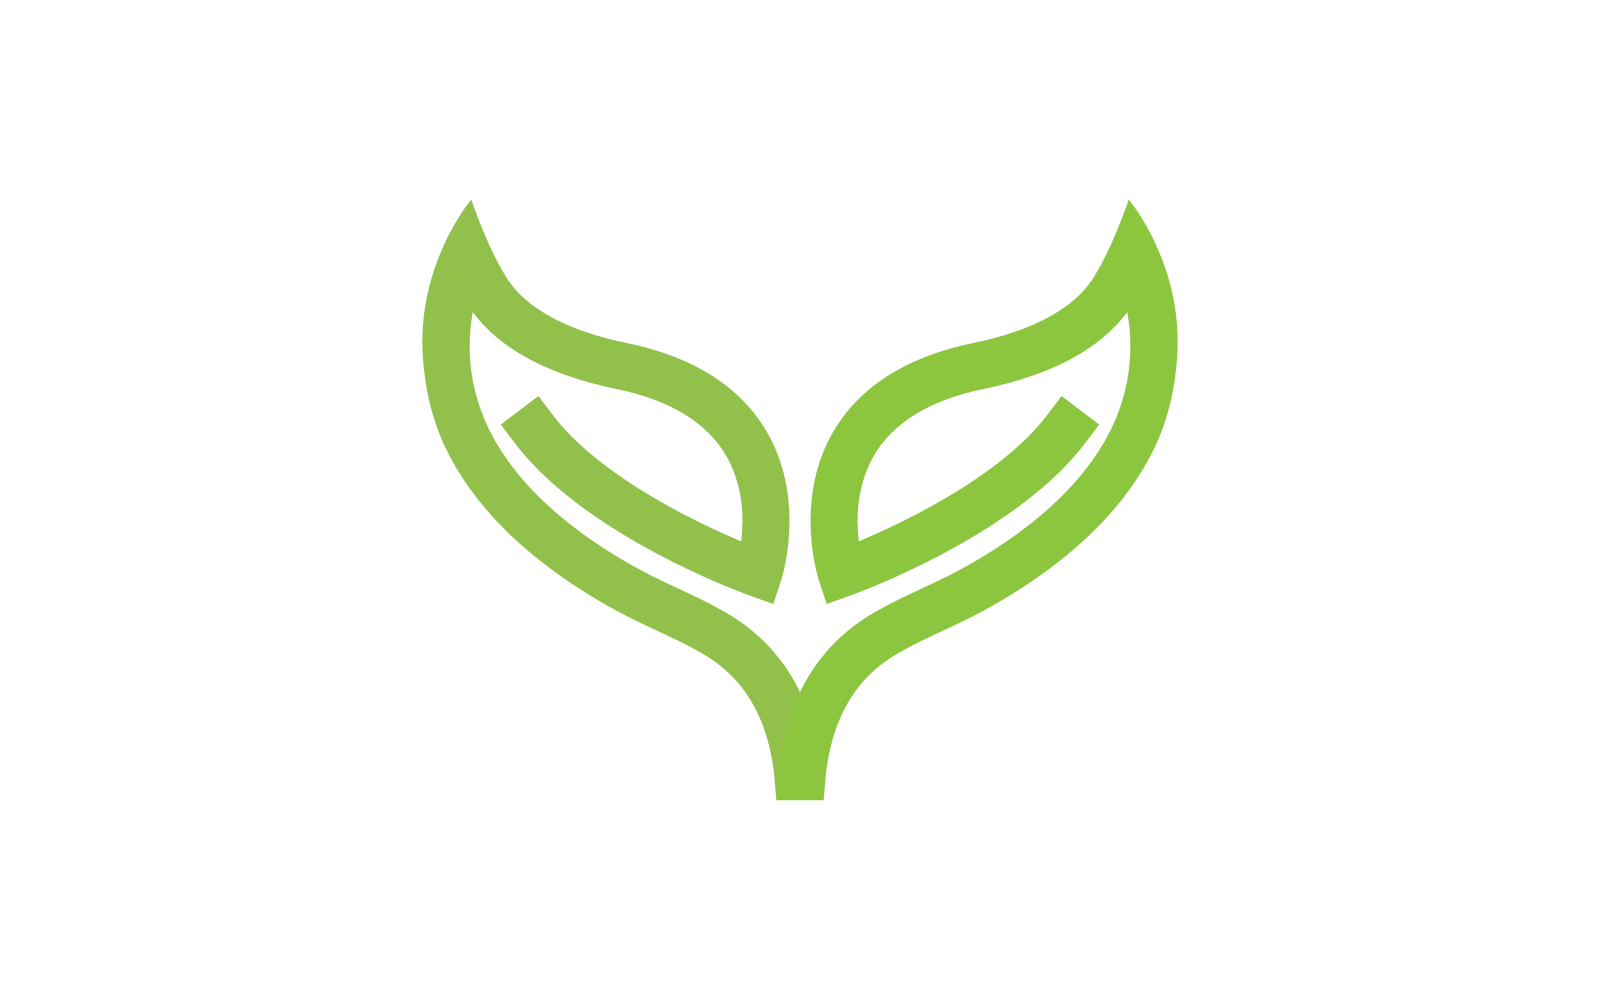 Green leaf illustration nature template logo design